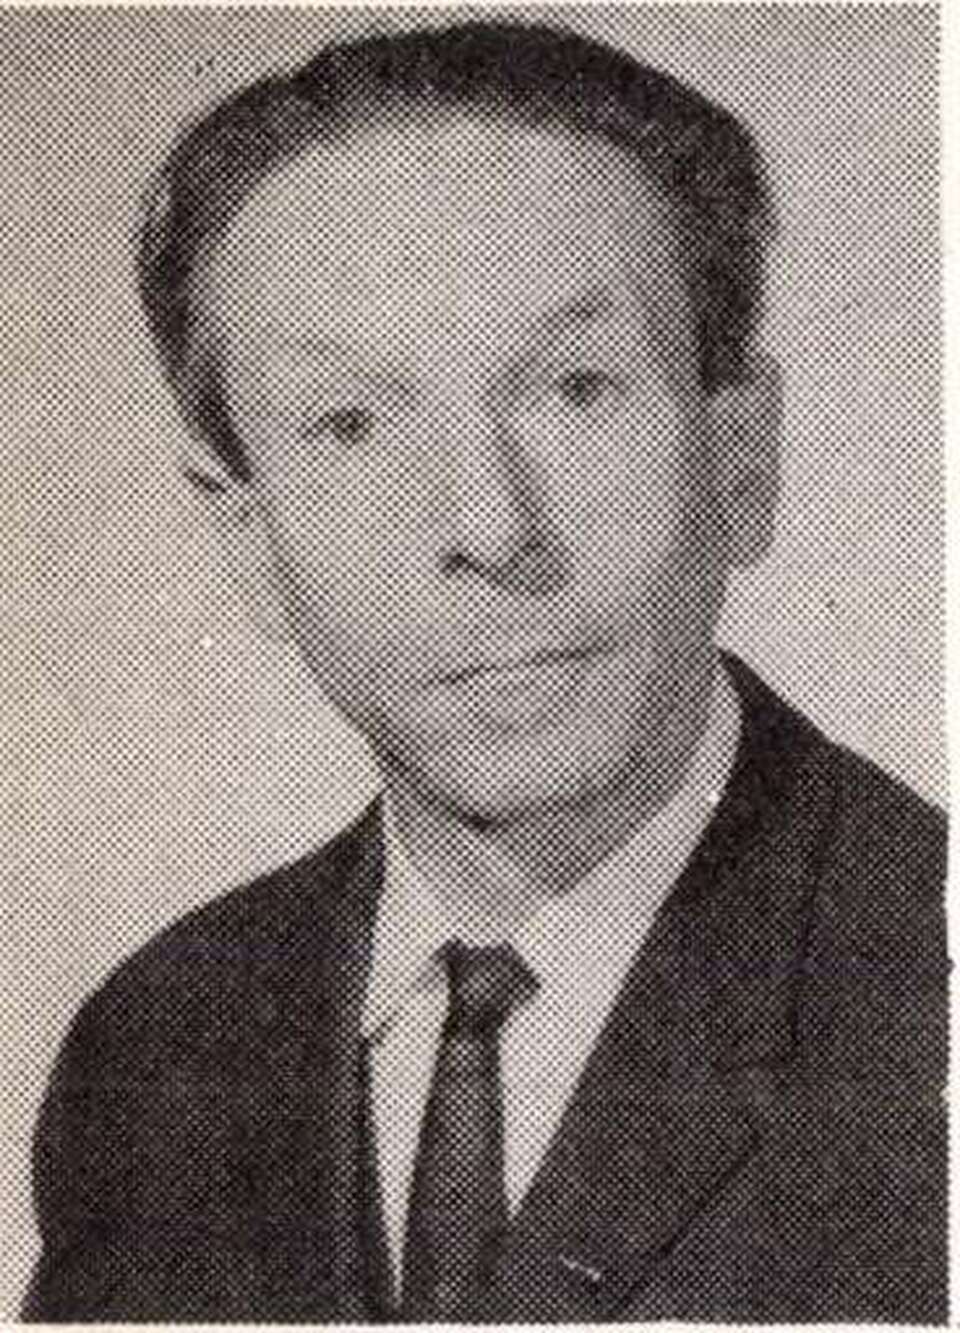 Perczel Károly 1968 körül (Dunakanyar, 1968. 209. o.)